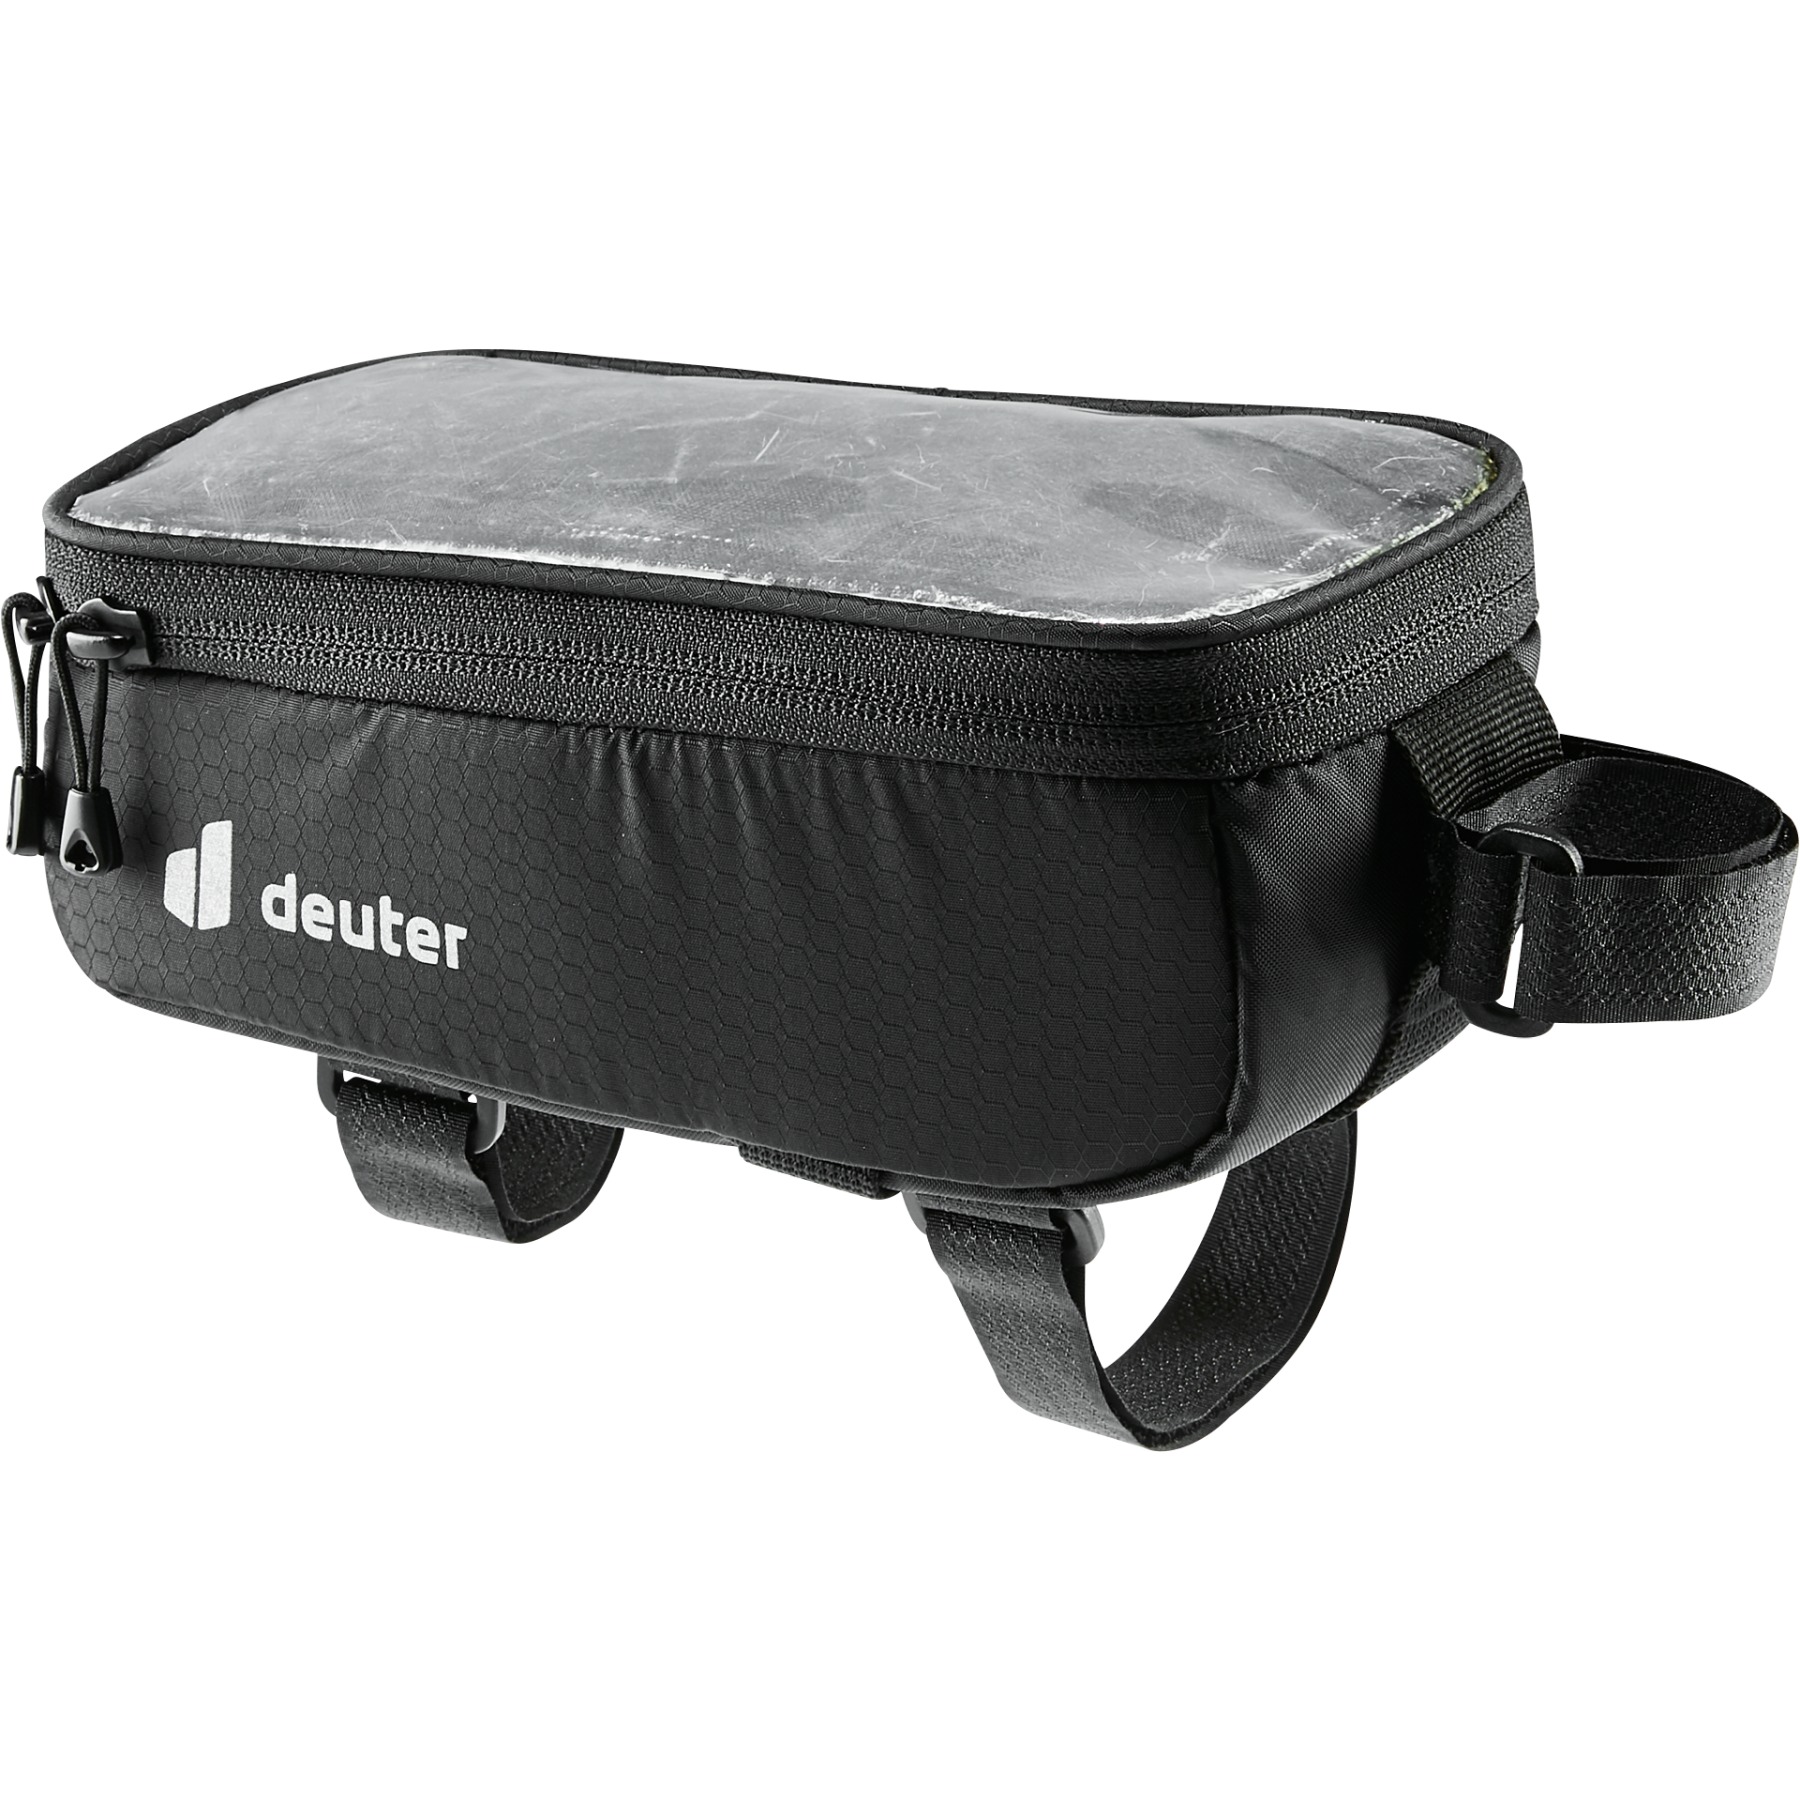 Image of Deuter Phone Bag 0.7 Top Tube Bag - black